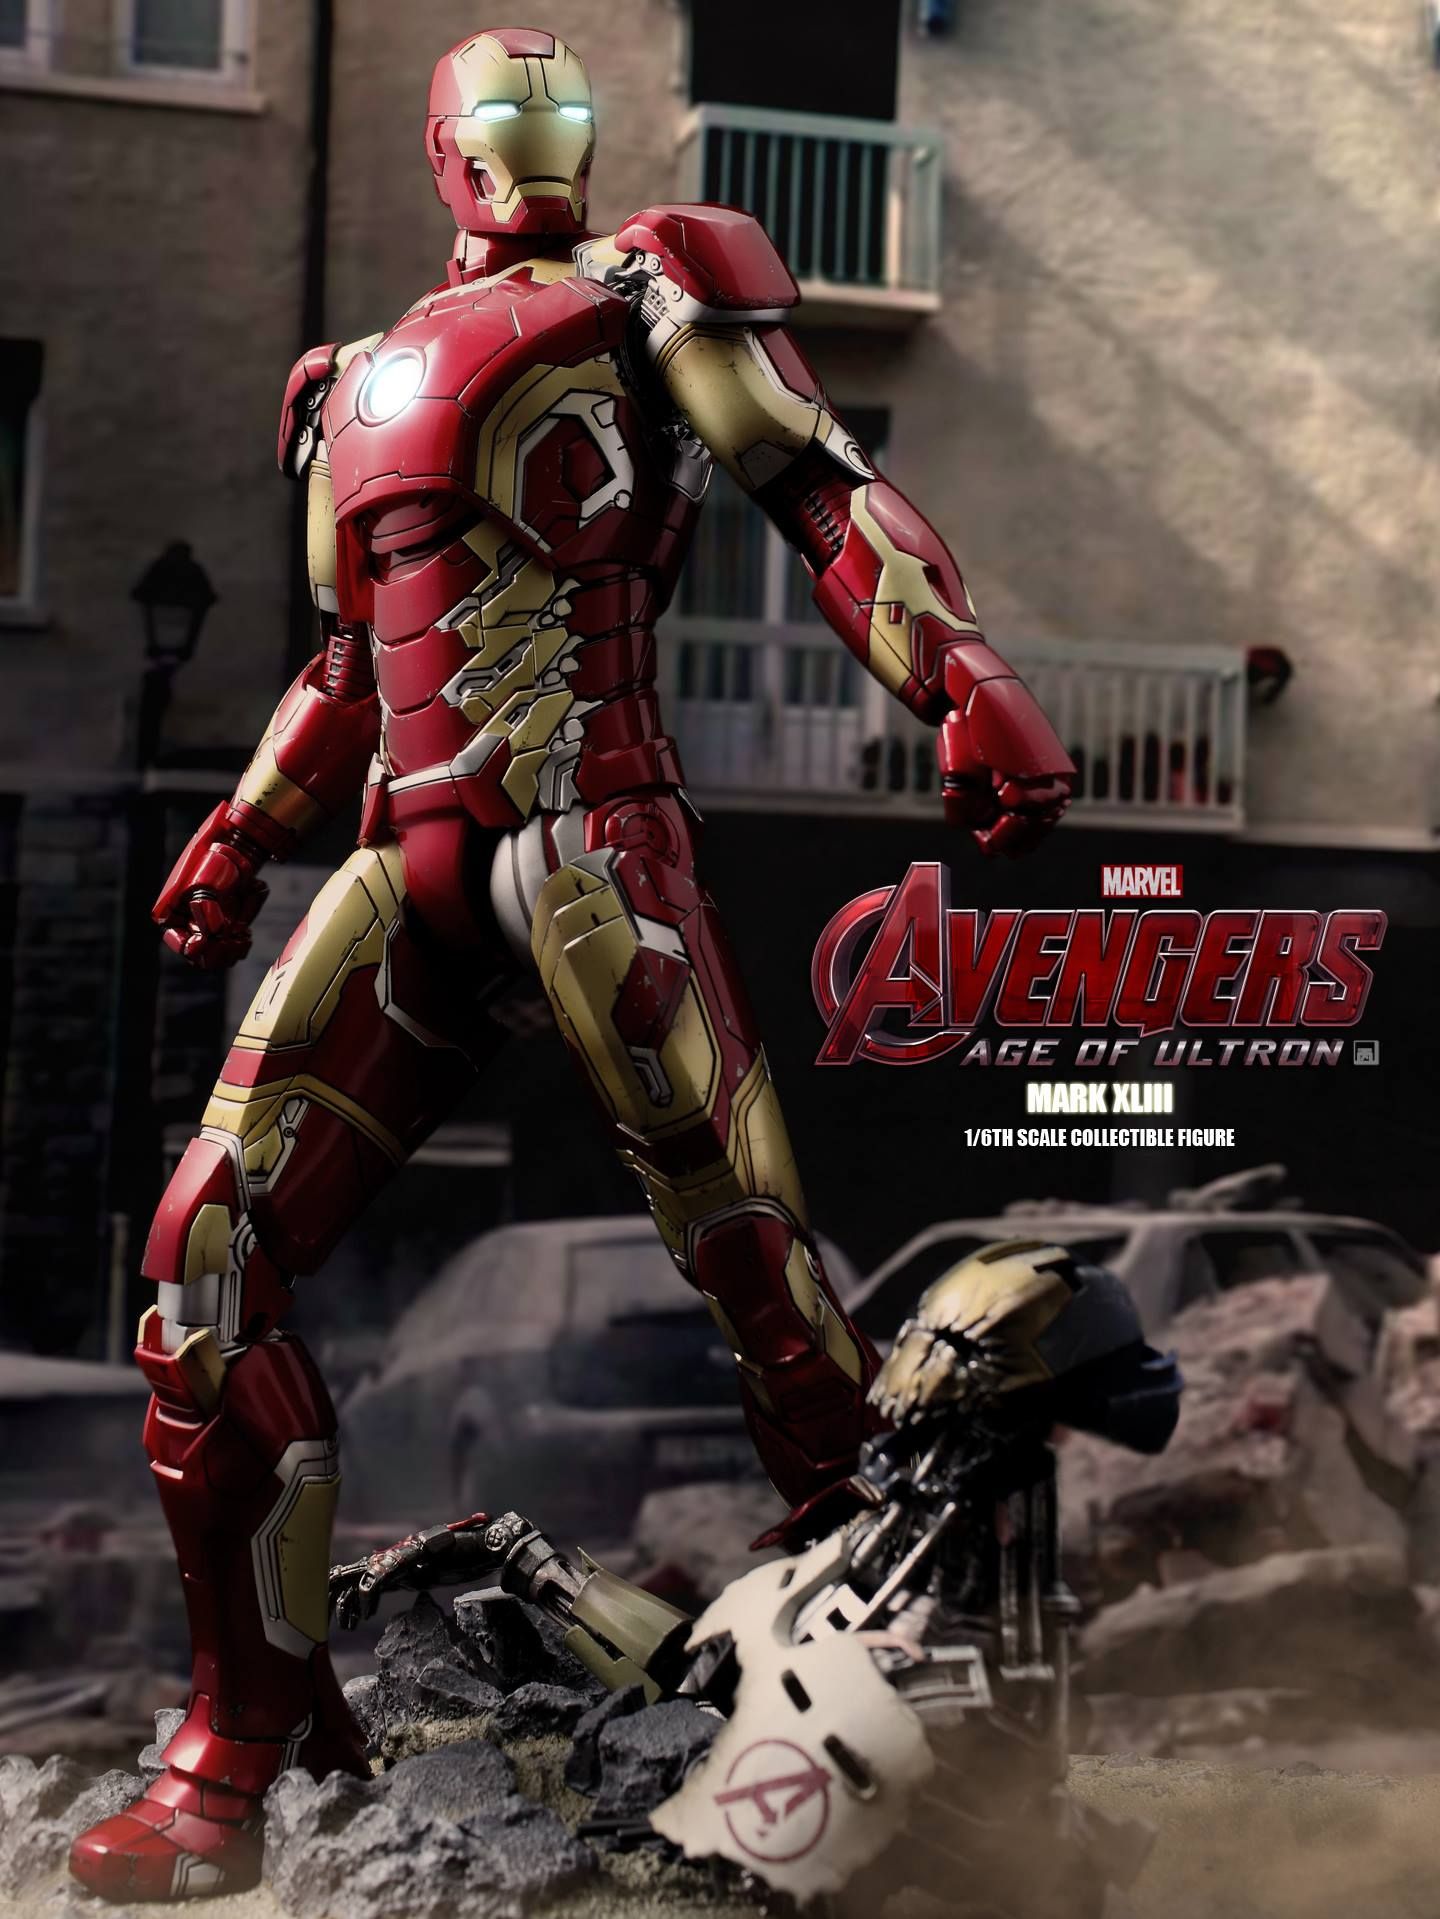 Avengers 2 Iron Man Mark XLIII Action Figure Photo 8